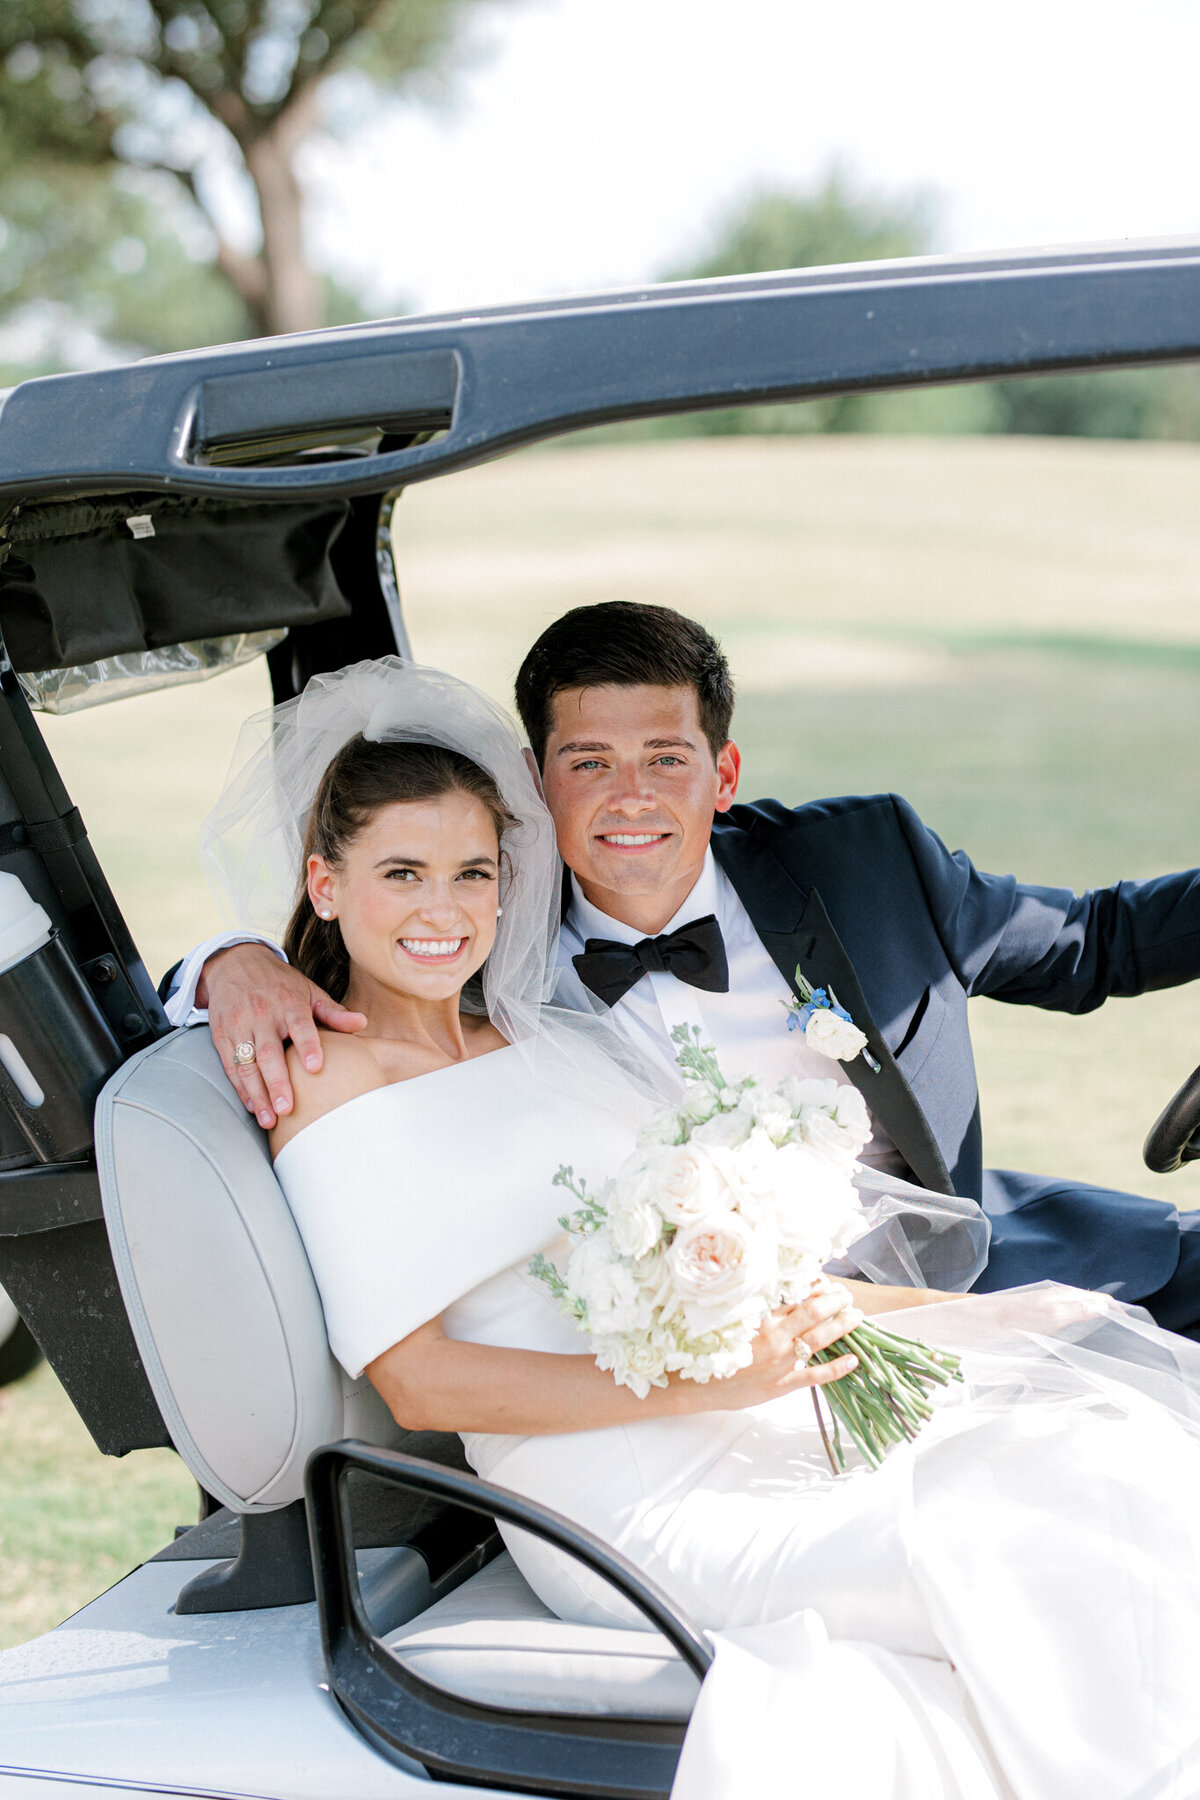 Annie & Logan's Wedding | Dallas Wedding Photographer | Sami Kathryn Photography-16